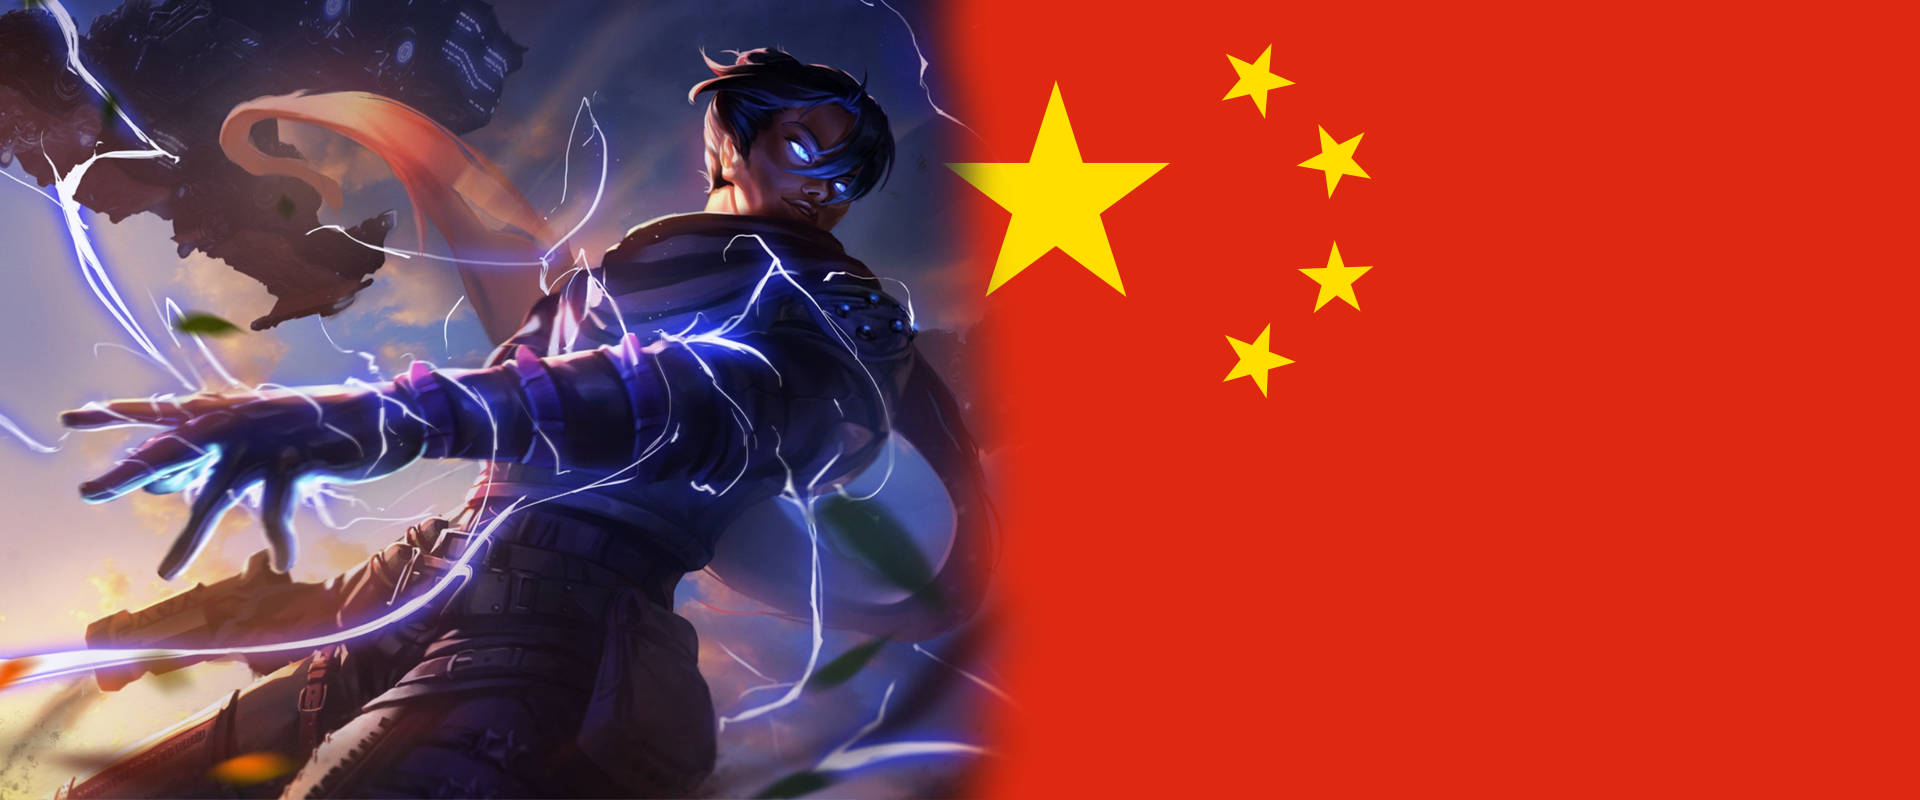 Kínába is megérkezhet az Apex Legends